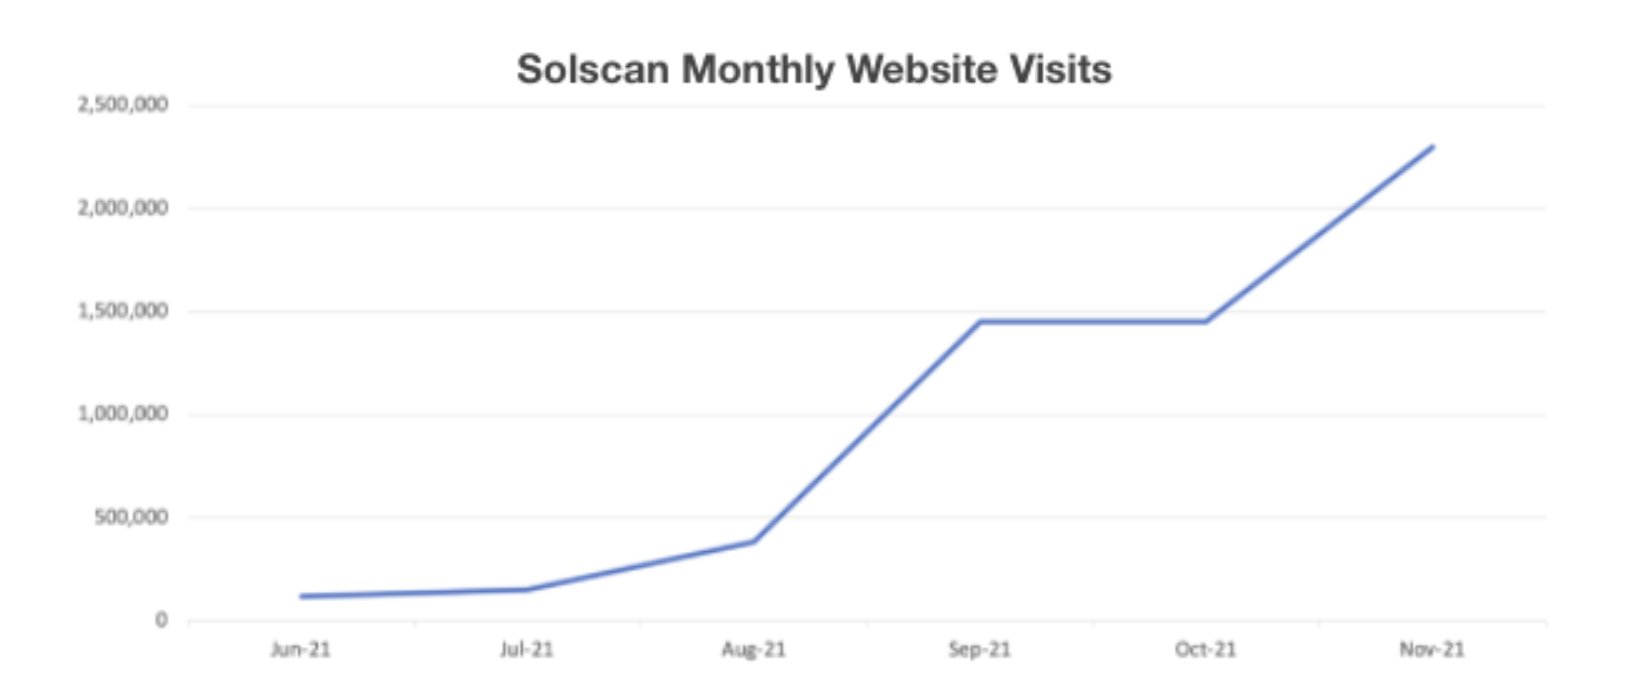 Solscan Monthly Website Visits 